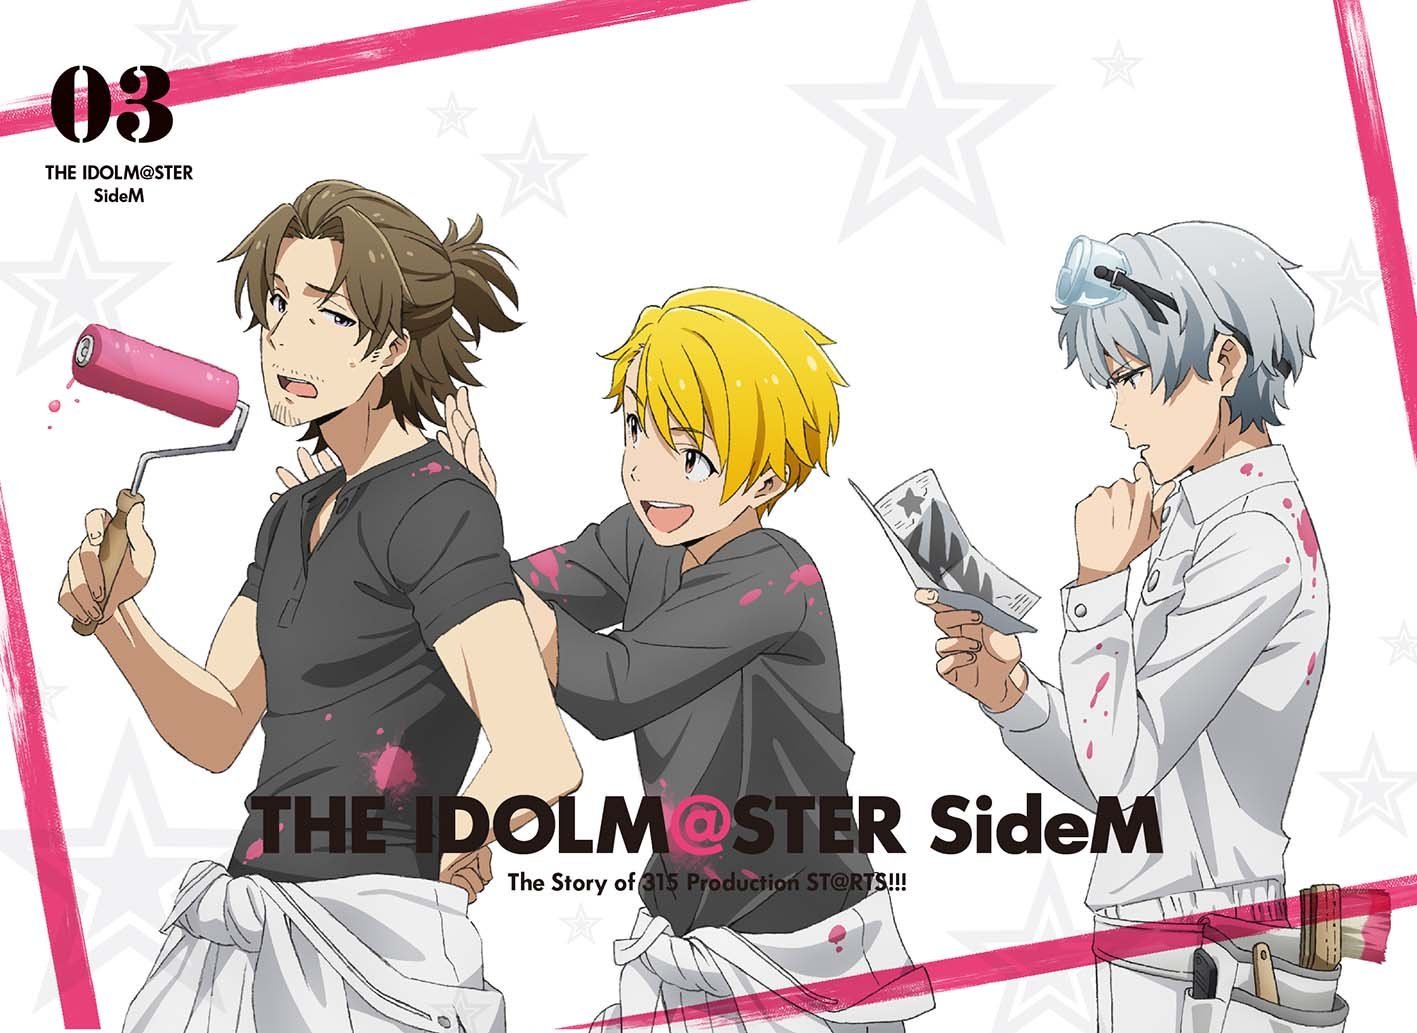 楽天ブックス: アイドルマスター SideM 3(完全生産限定版)【Blu-ray 